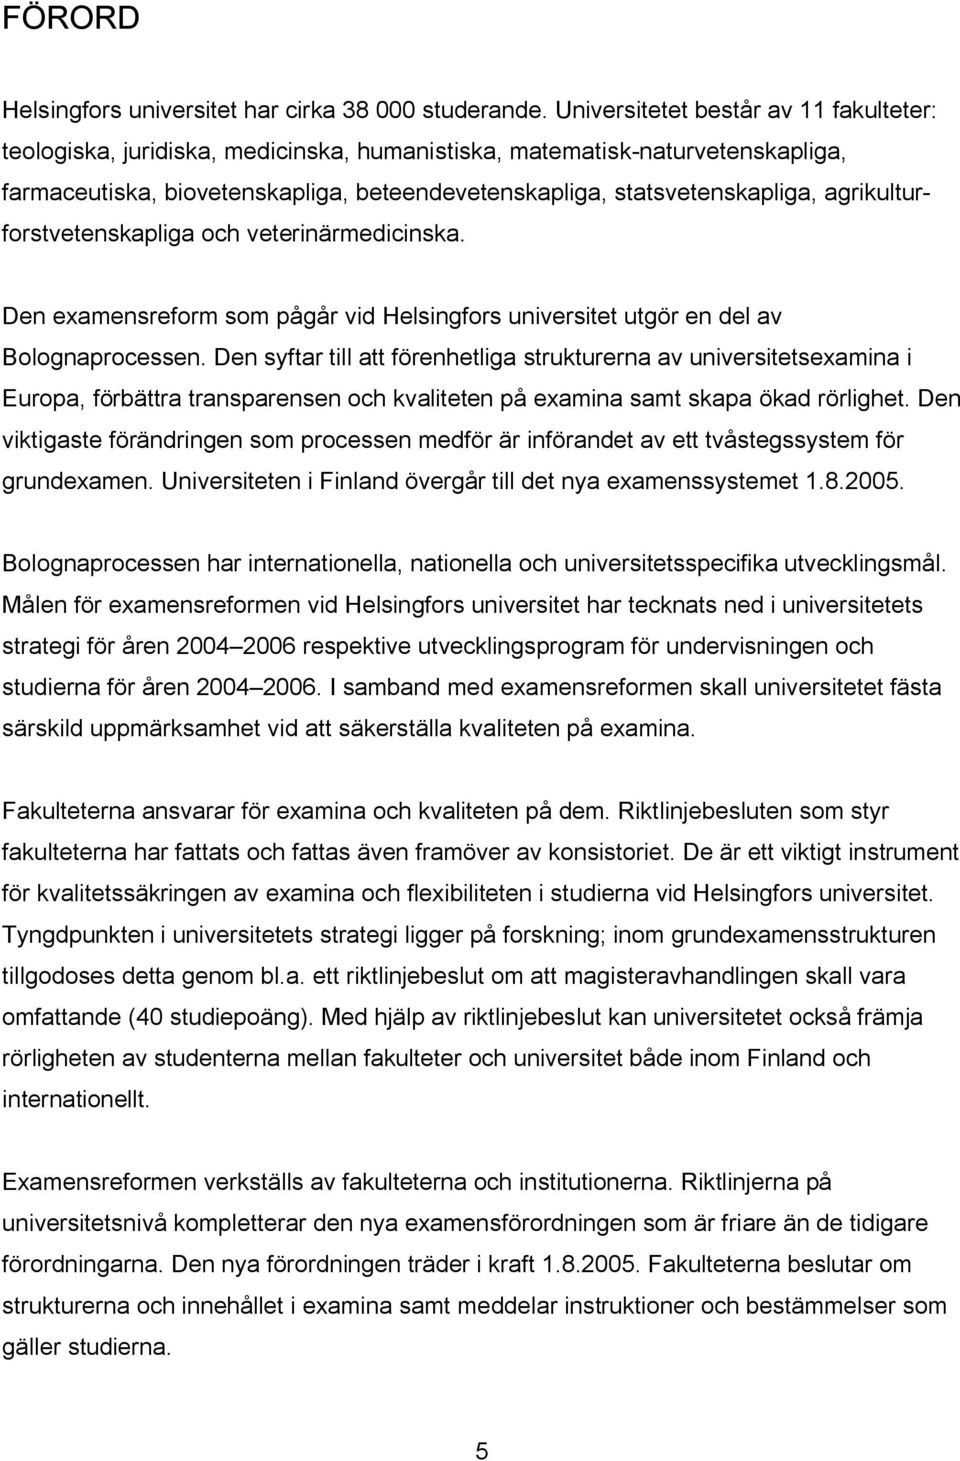 agrikulturforstvetenskapliga och veterinärmedicinska. Den examensreform som pågår vid Helsingfors universitet utgör en del av Bolognaprocessen.